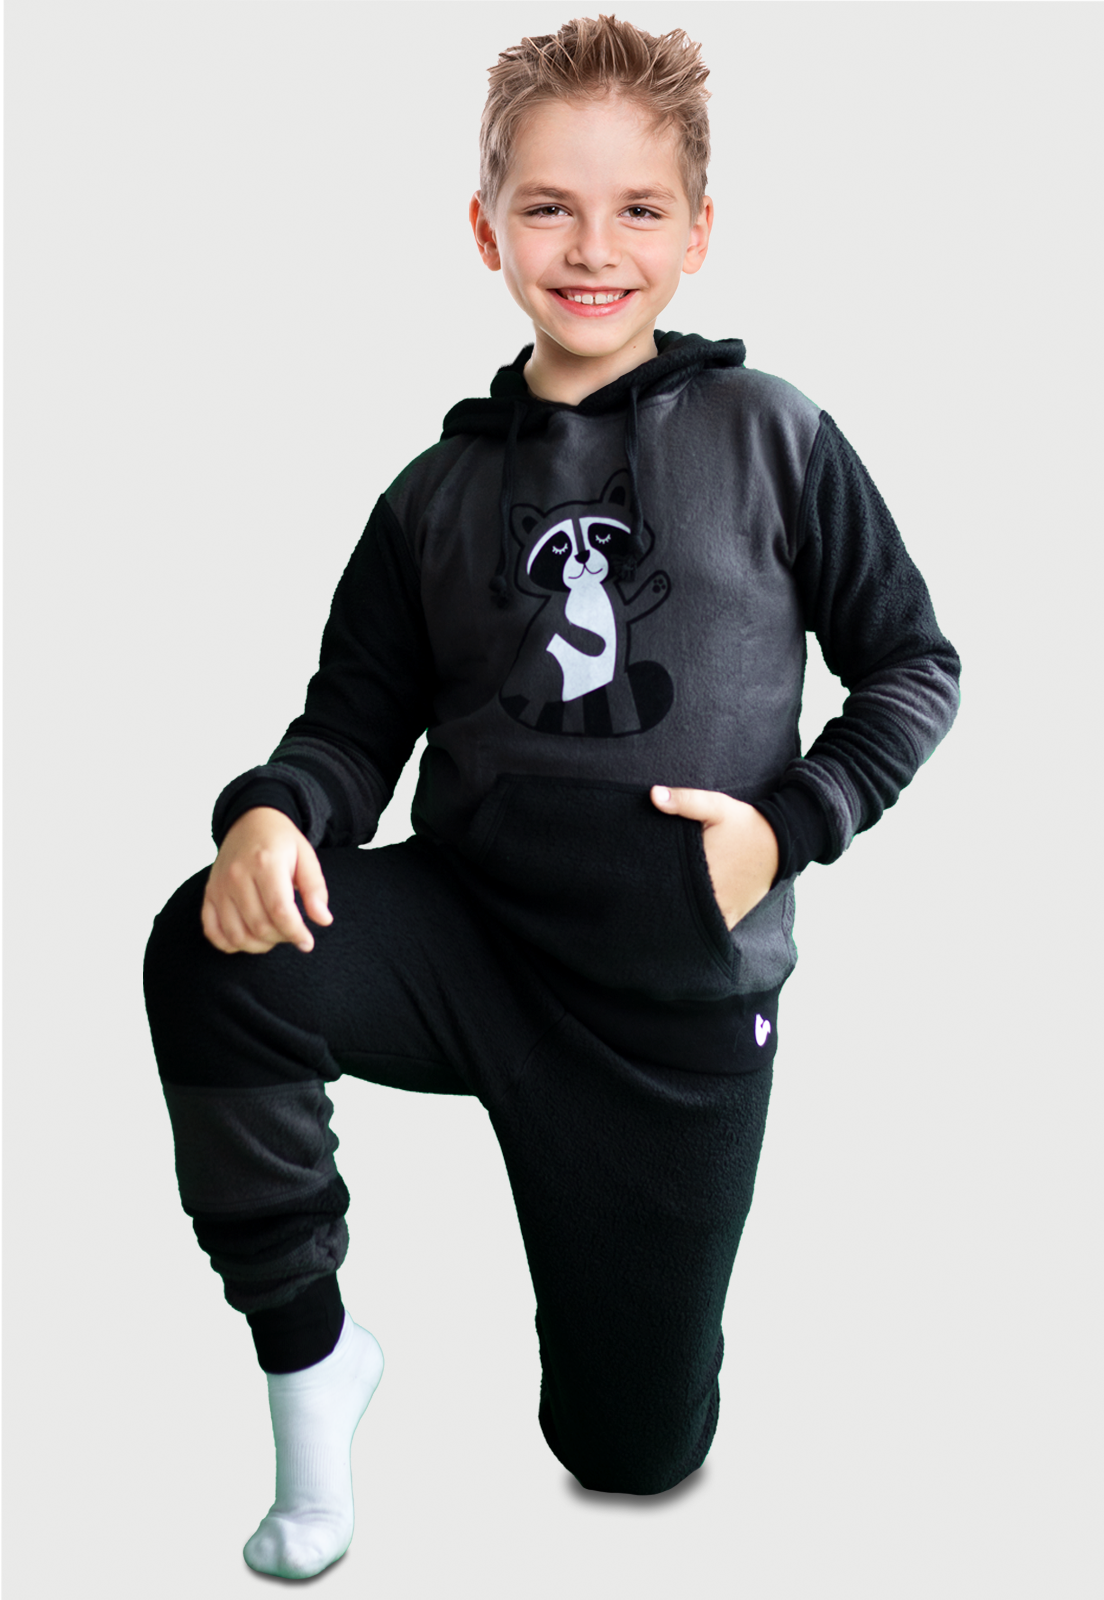 Lindo Niño cuerpo entero arrodillado en el piso vistiendo la Pijama Mapache negra y gris con un lindo mapache estampado en el pecho, diseño de Arctic Fox Colombia